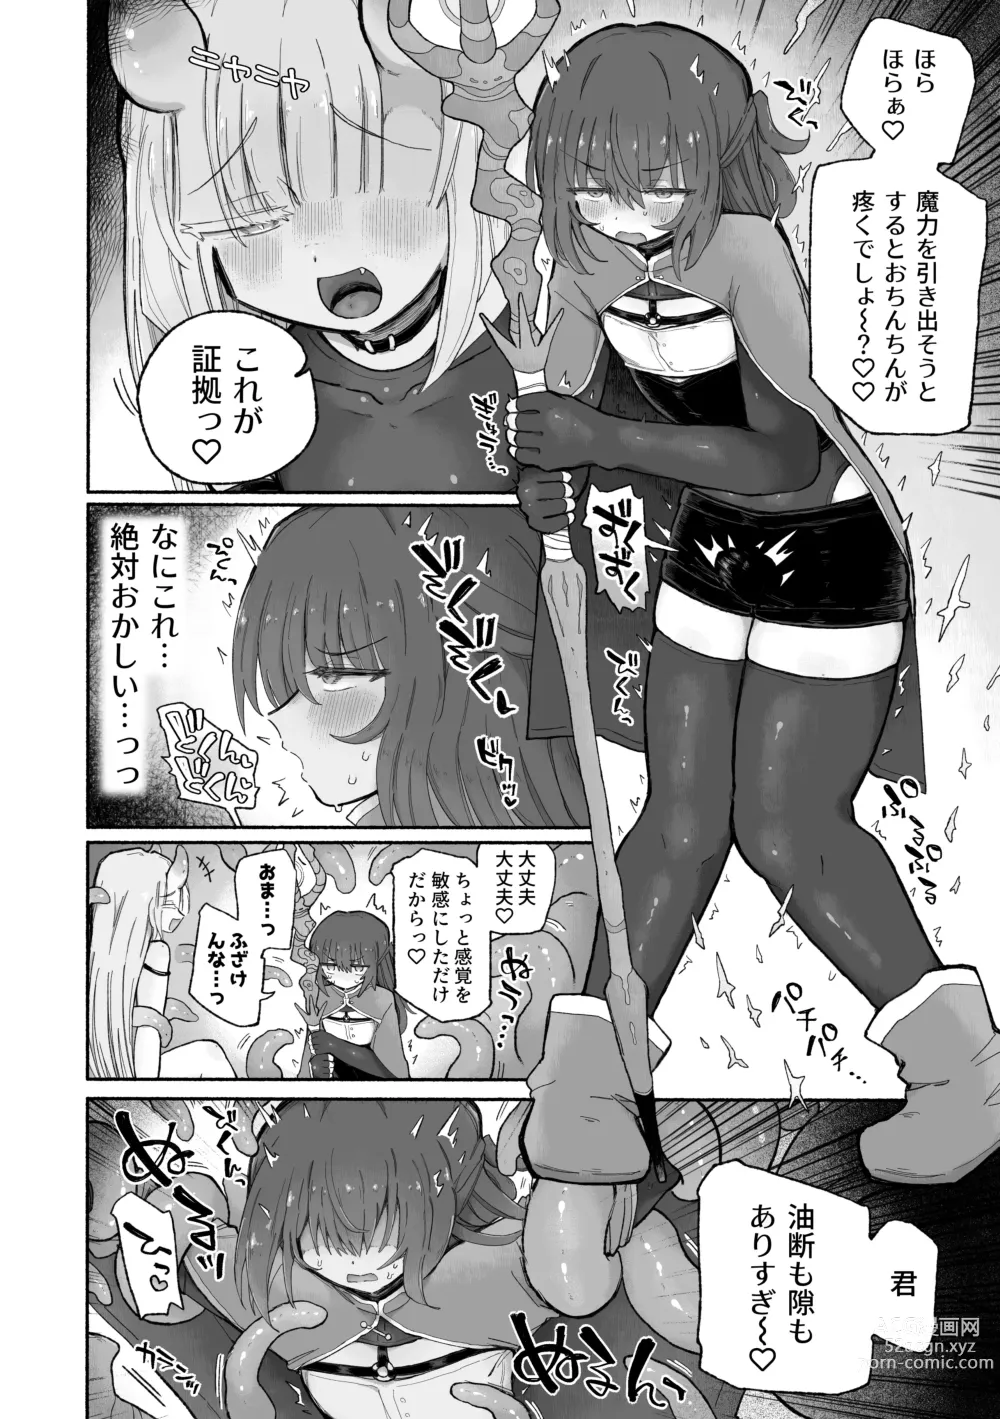 Page 8 of doujinshi Do hamari chui no kyosei danjon! 〜Mugen shasei no kairaku jigoku e yokoso〜